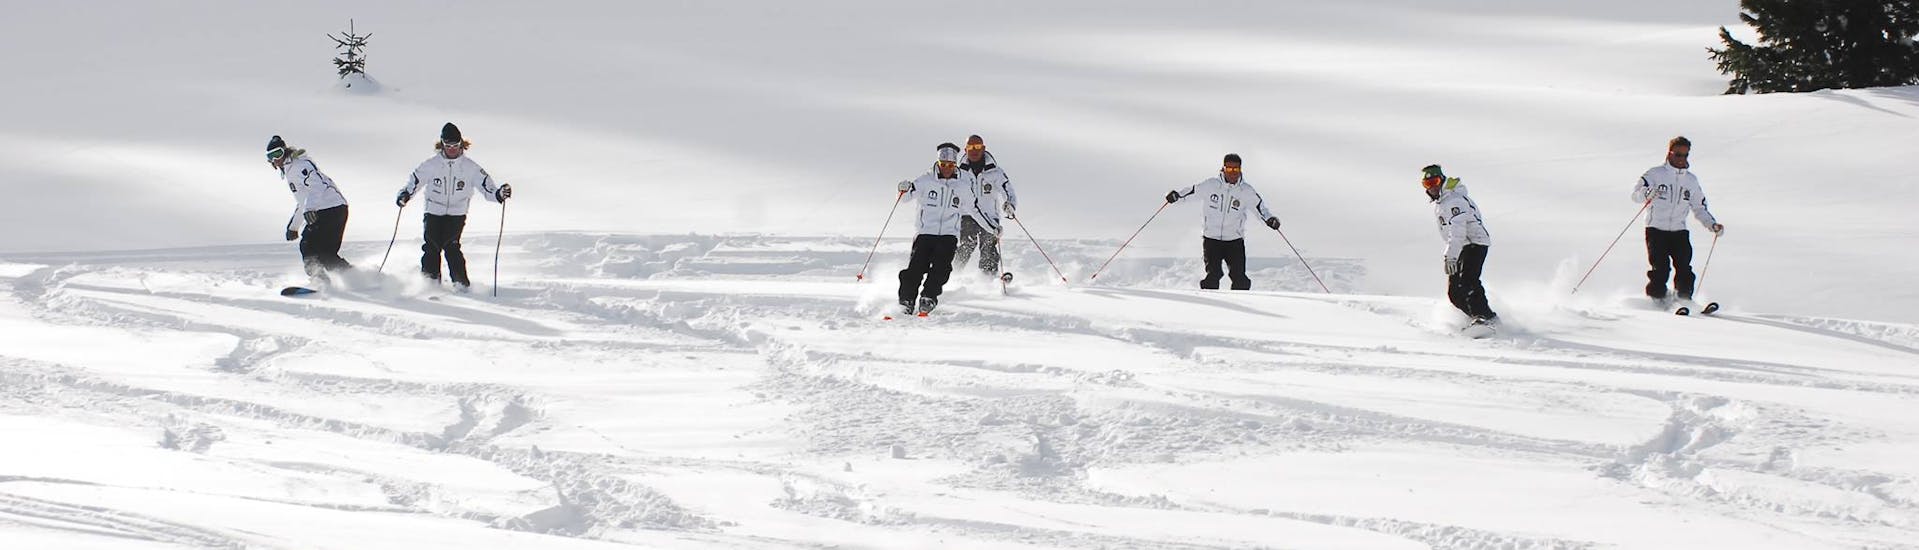 Istruttori della scuola durante le Lezioni private di sci per adulti per tutti i livelli con Maestri Sci Moena.